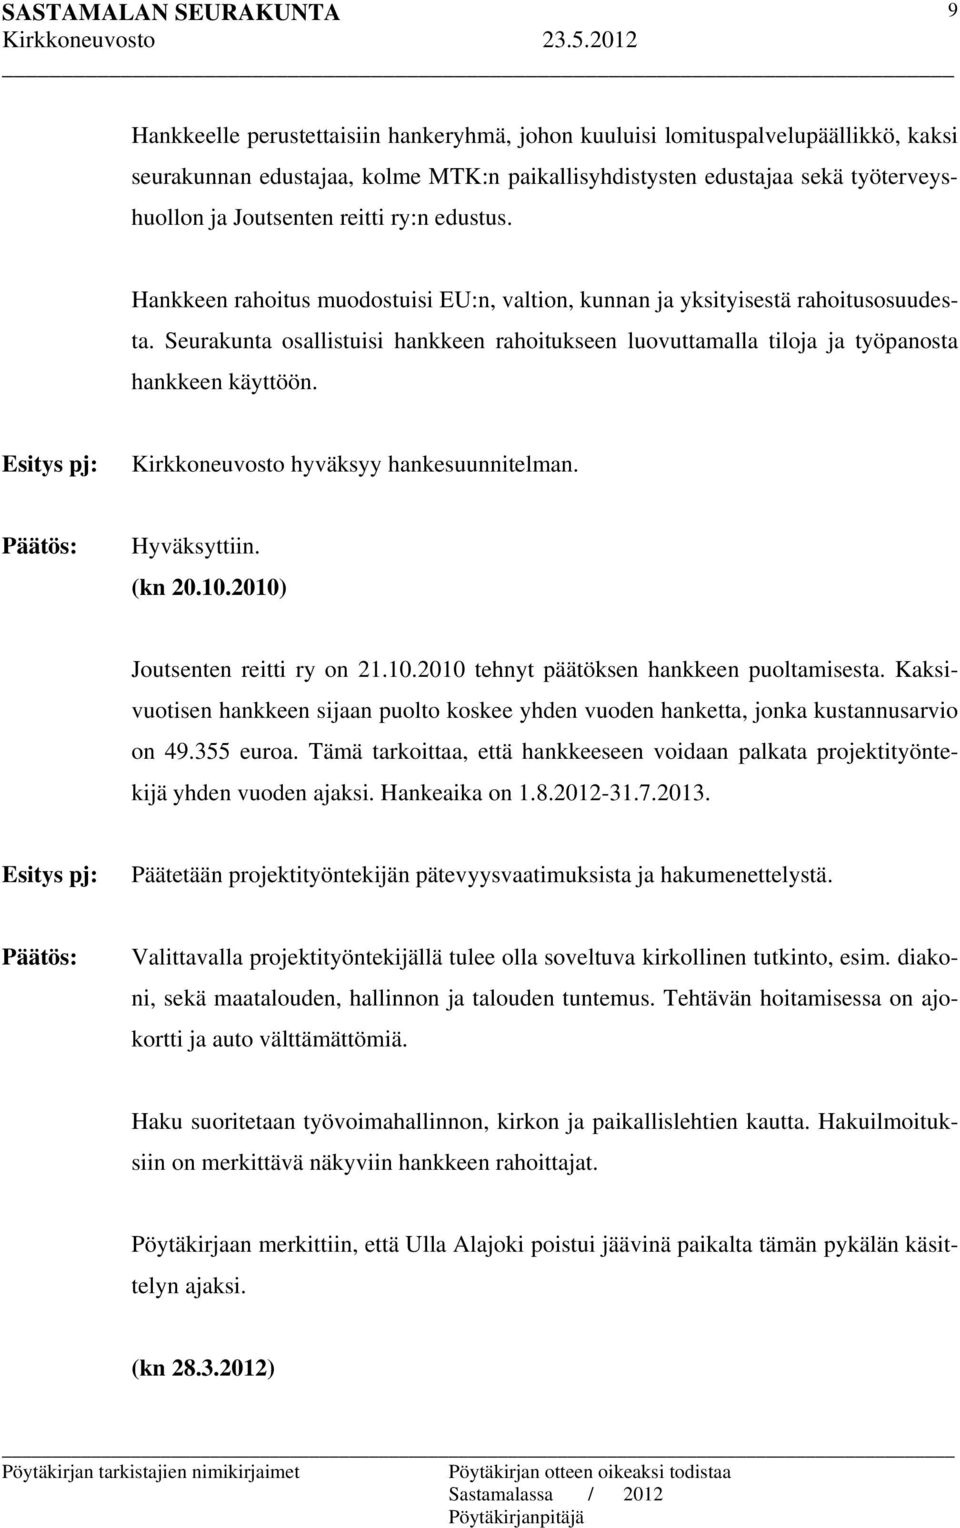 Kirkkoneuvosto hyväksyy hankesuunnitelman. (kn 20.10.2010) Joutsenten reitti ry on 21.10.2010 tehnyt päätöksen hankkeen puoltamisesta.